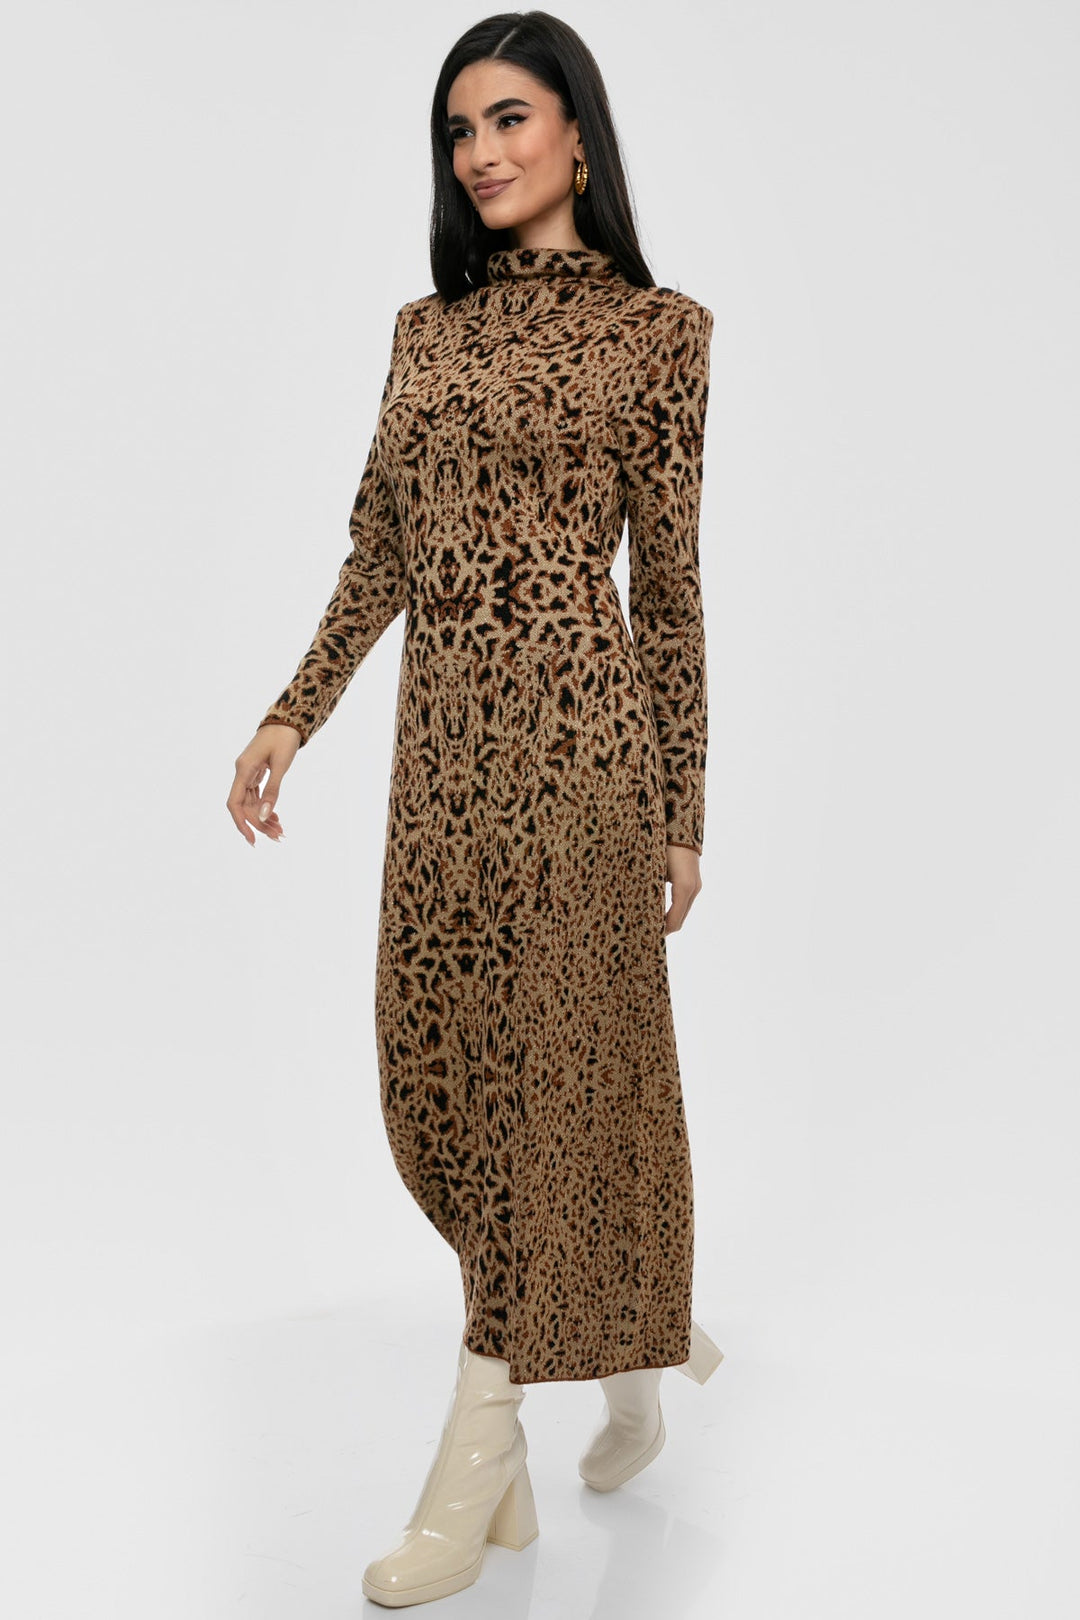 Φόρεμα μίντι lurex animal print Aggel Knitwear - A Collection Boutique